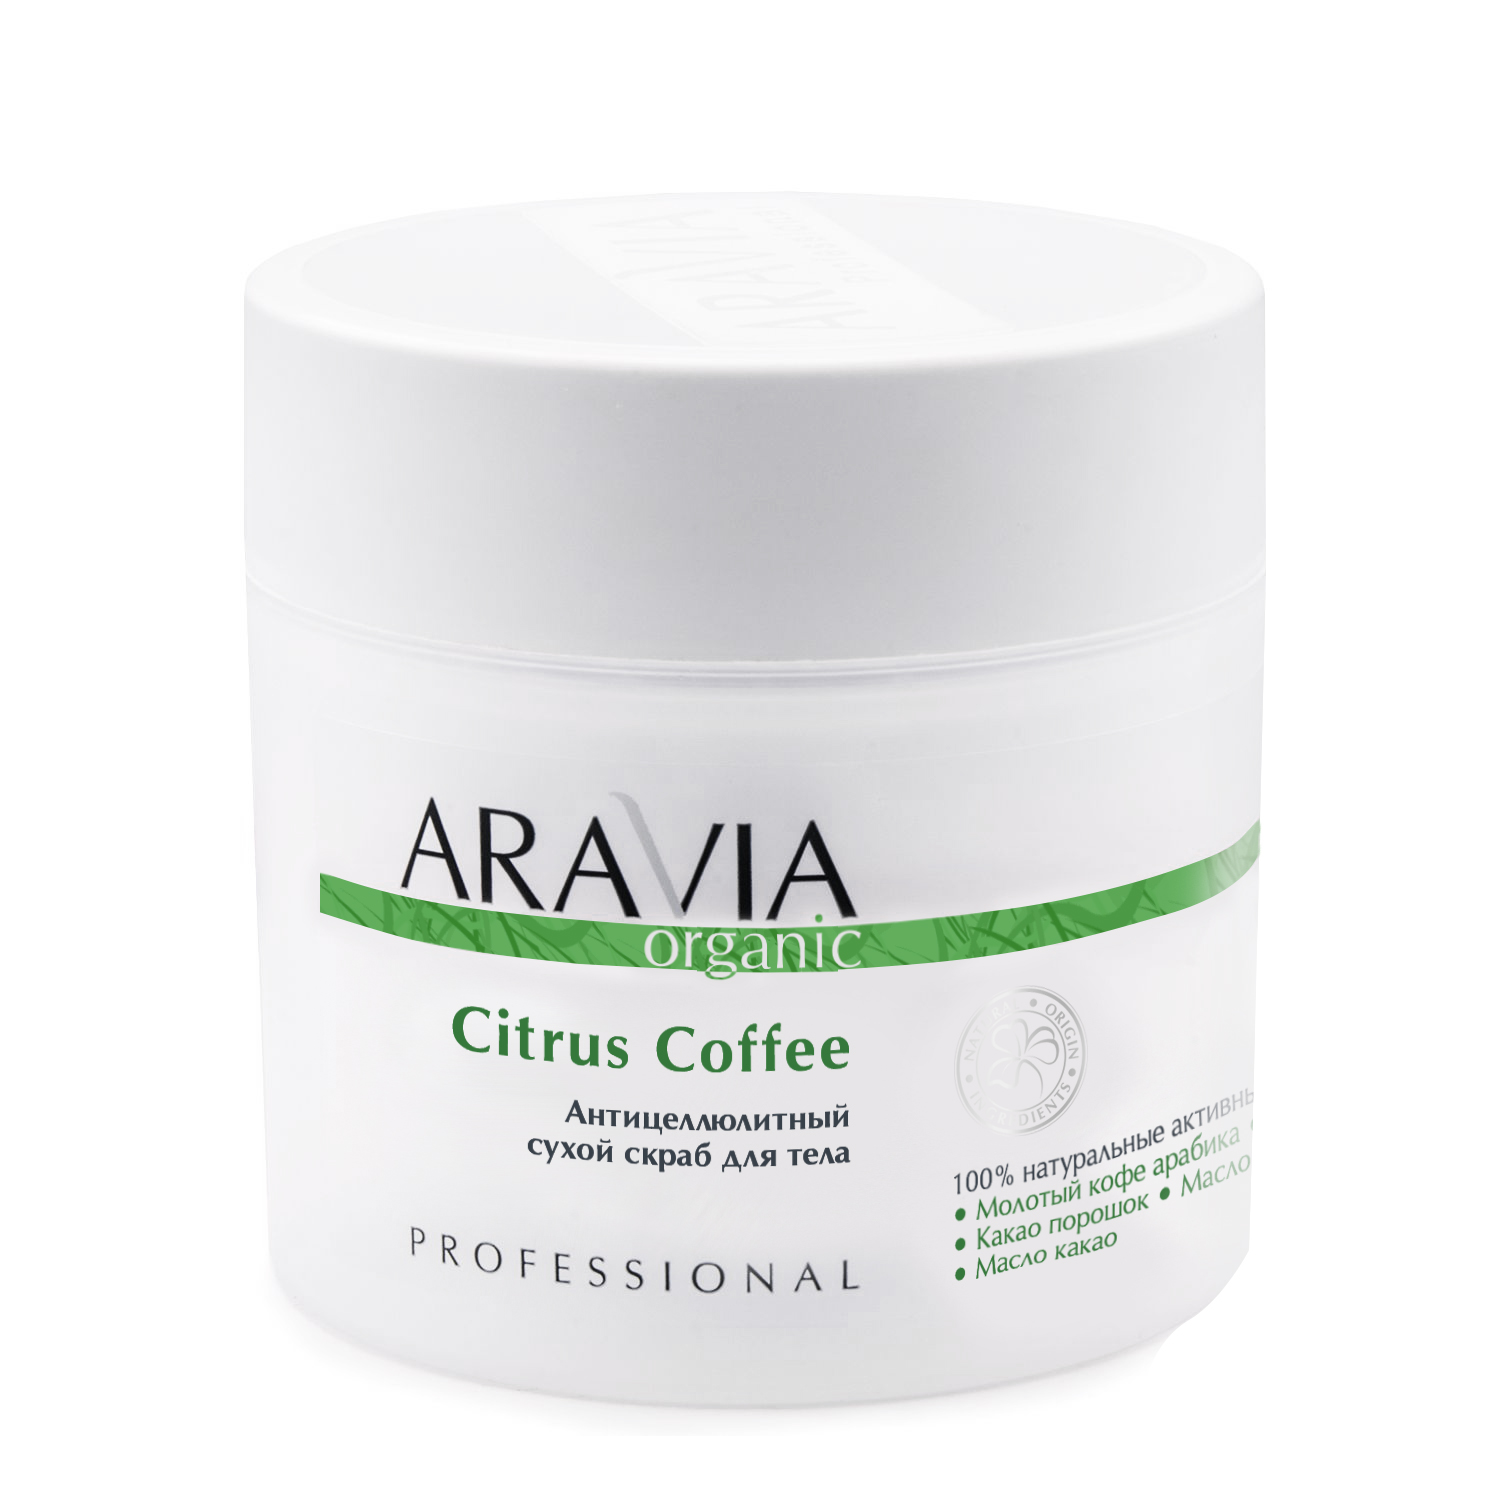 Aravia Professional Антицеллюлитный сухой скраб для тела Citrus Coffee, 300 мл (Aravia Professional, Уход за телом) уход за телом sea